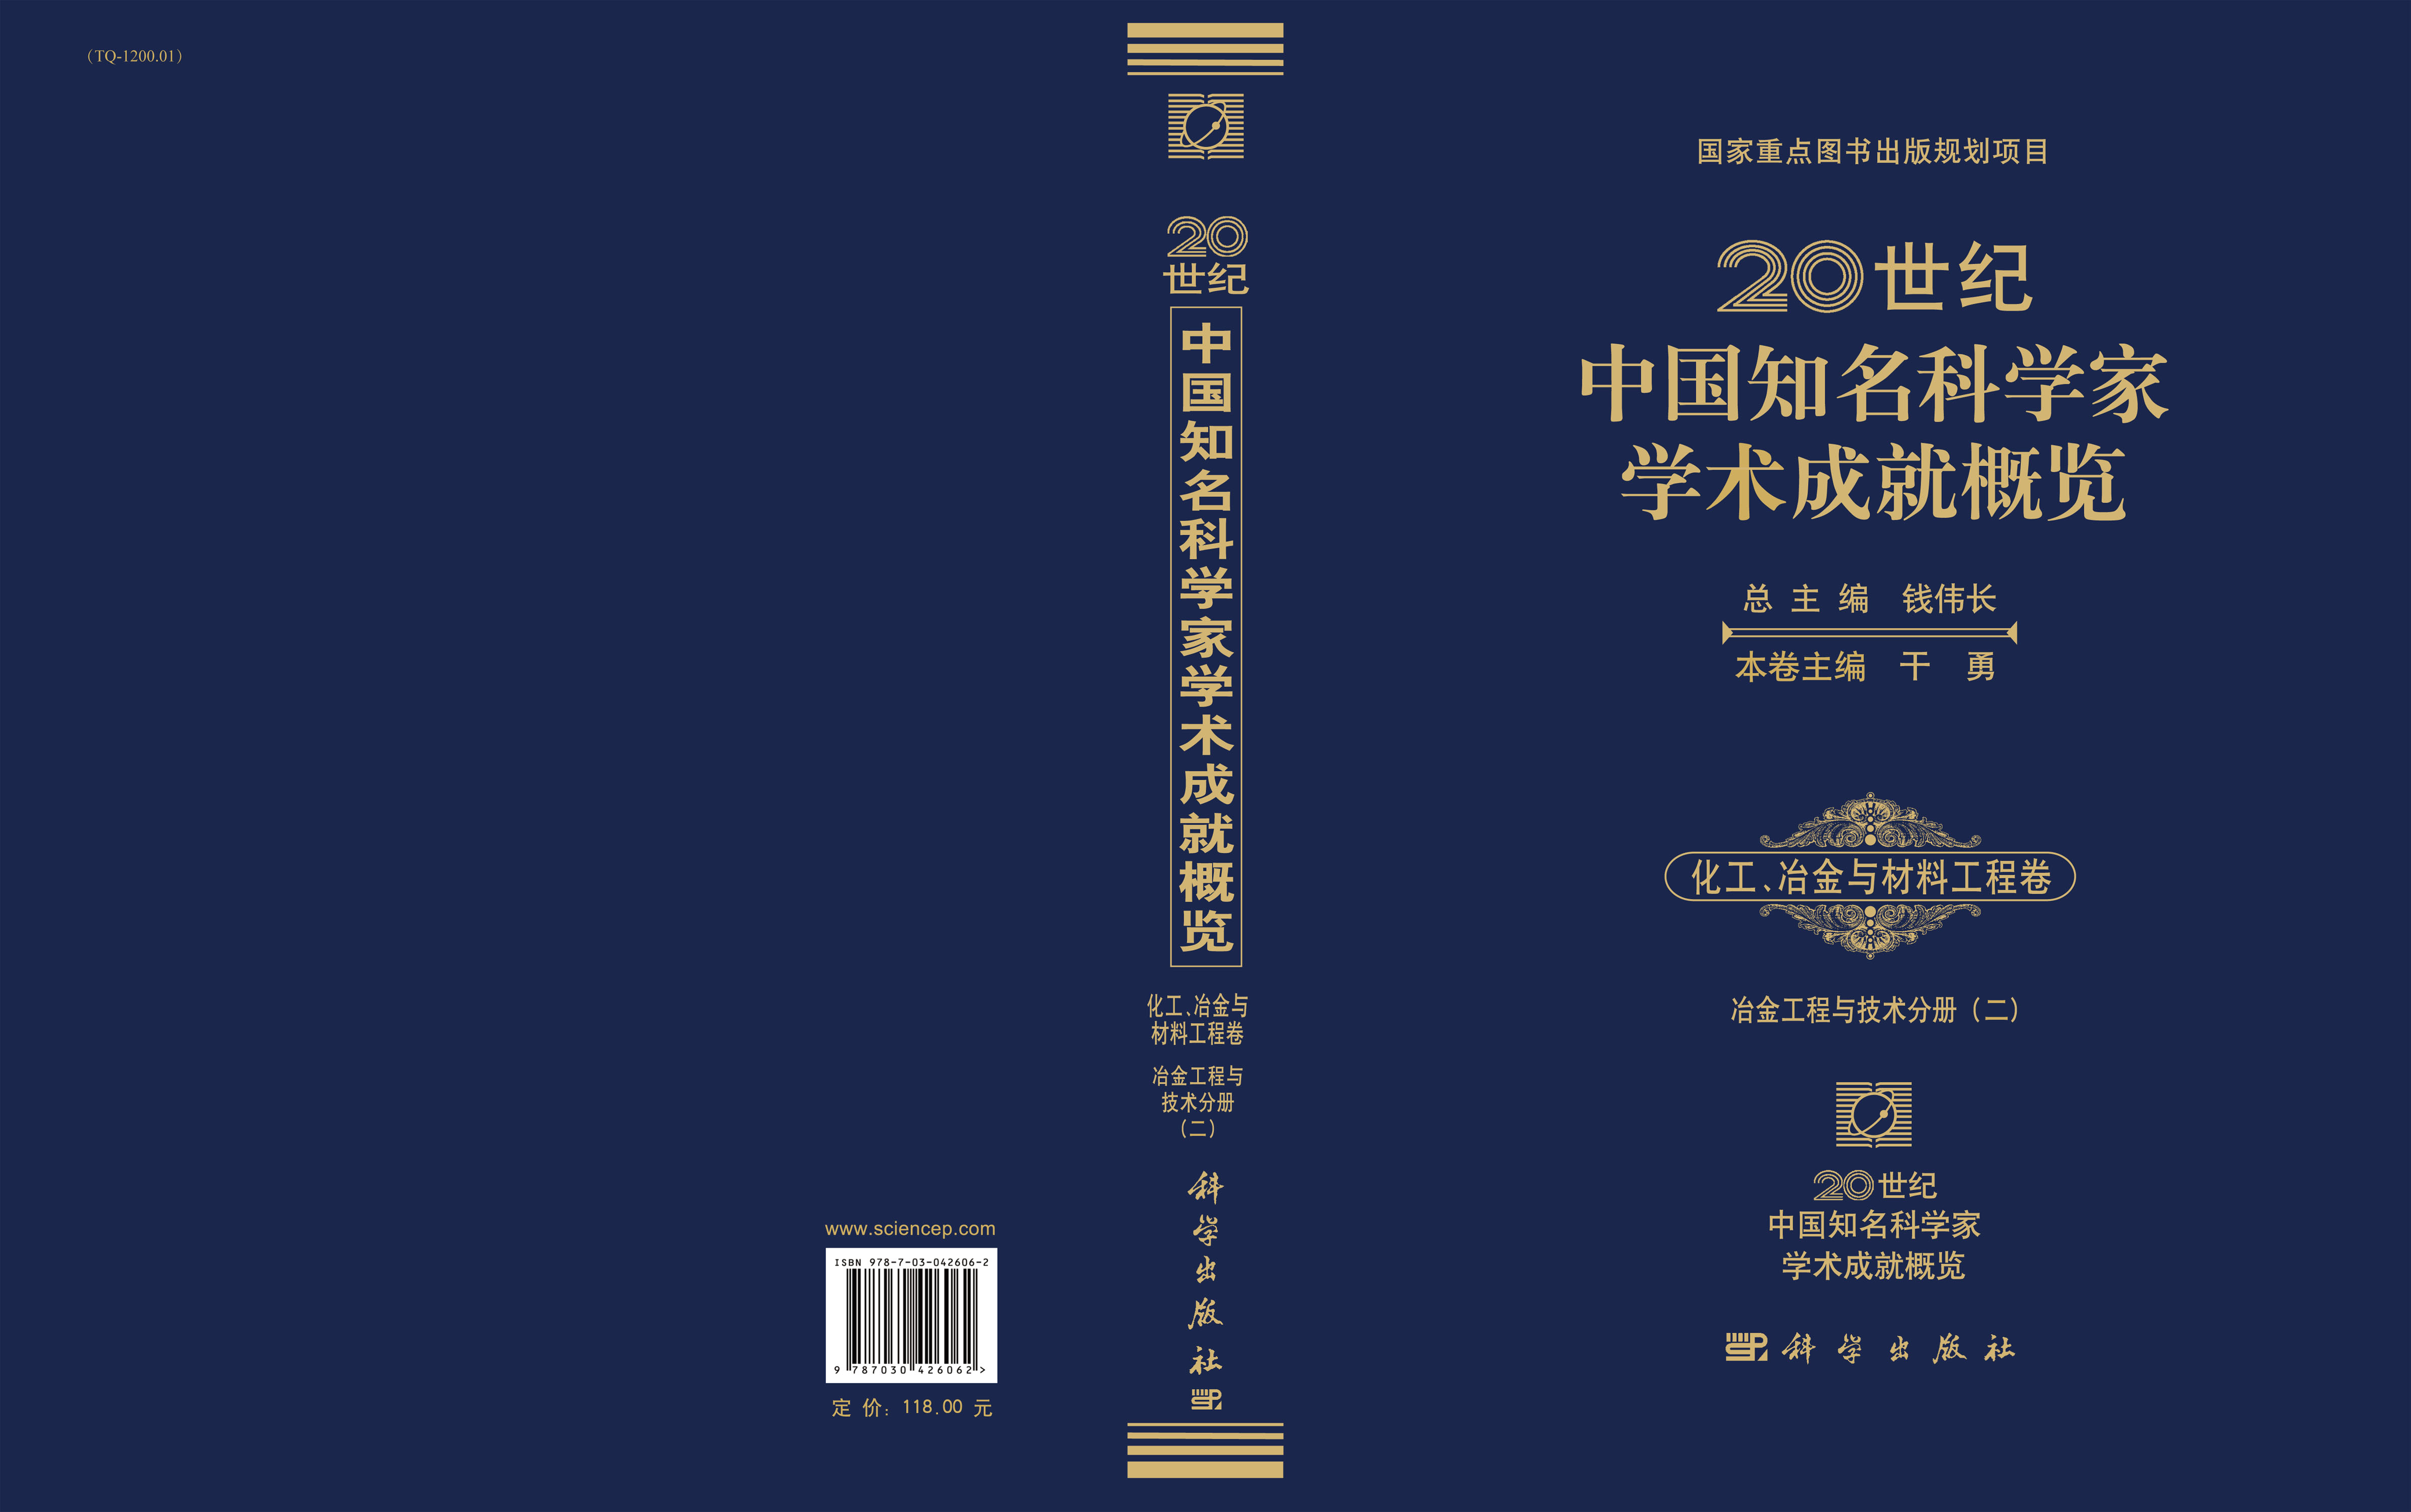 20世纪中国知名科学家学术成就概览・化工、冶金与材料工程卷・冶金工程与技术分册（二）